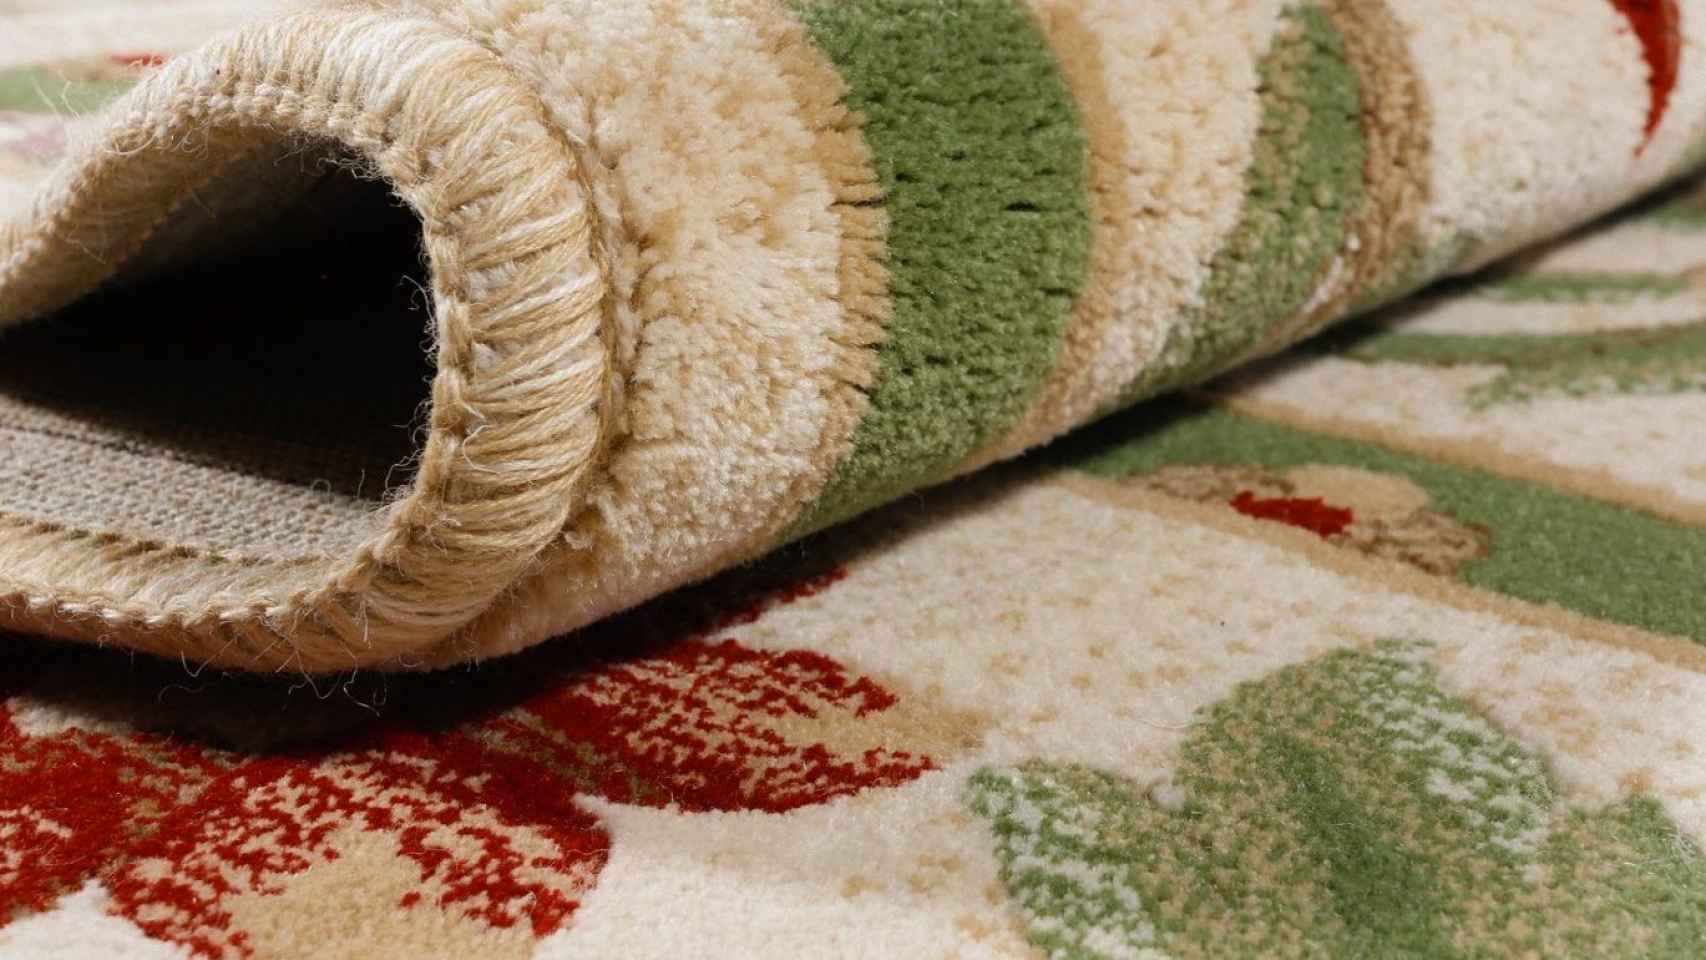 Una de las alfombras de pura lana que ofrece Mundoalfombra.com